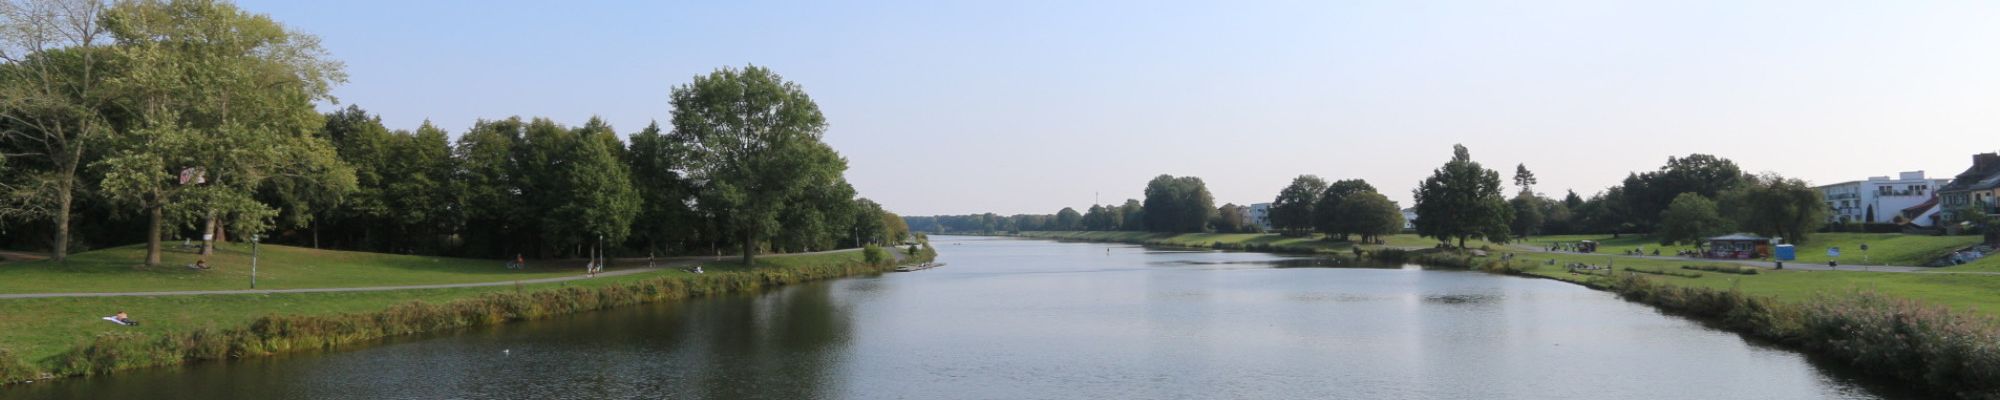 Werdersee